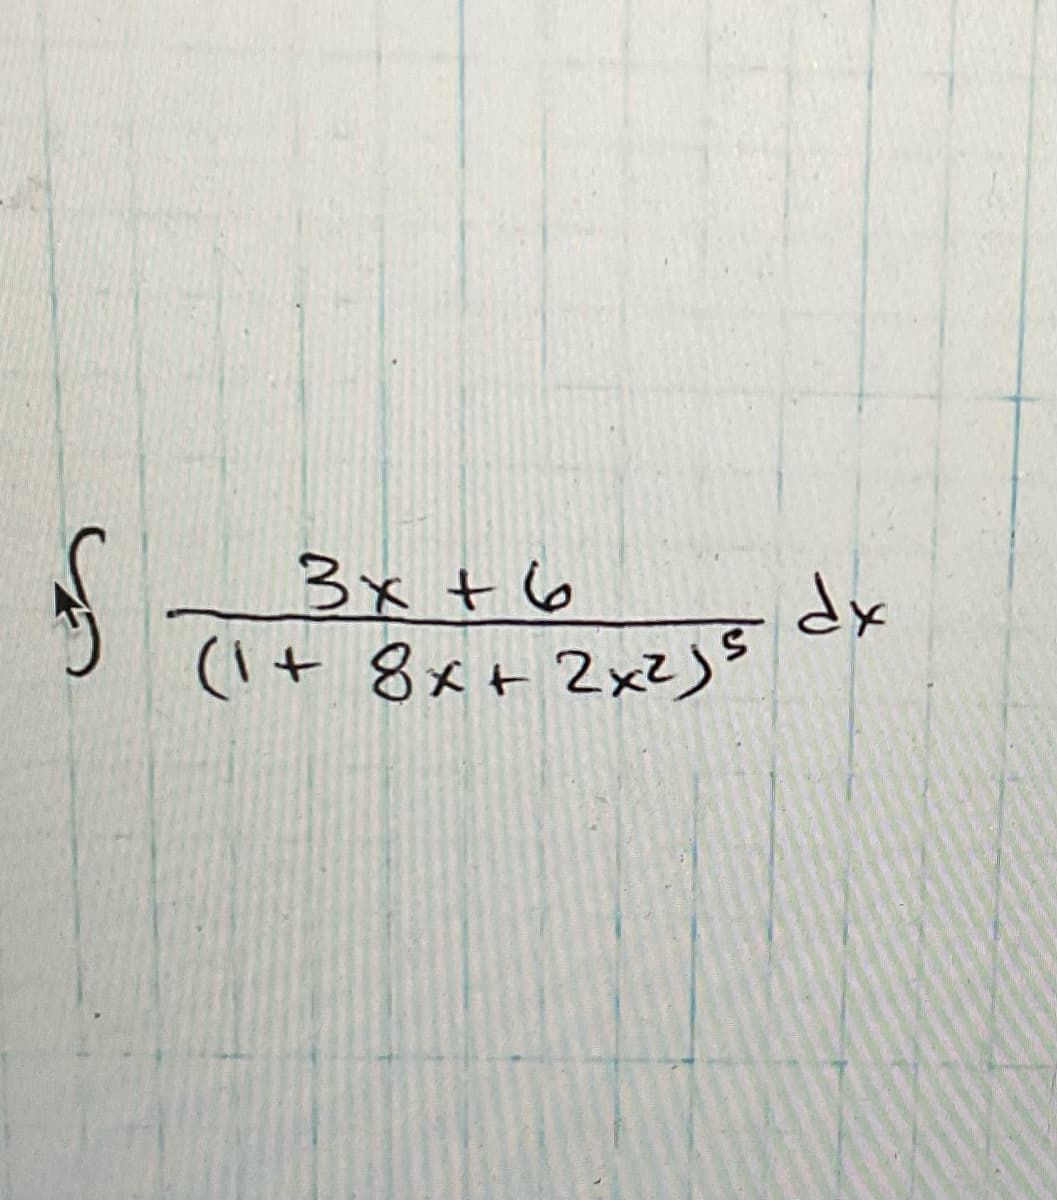 S
3x + 6
(1 + 8x+ 2x²)5
S
dx